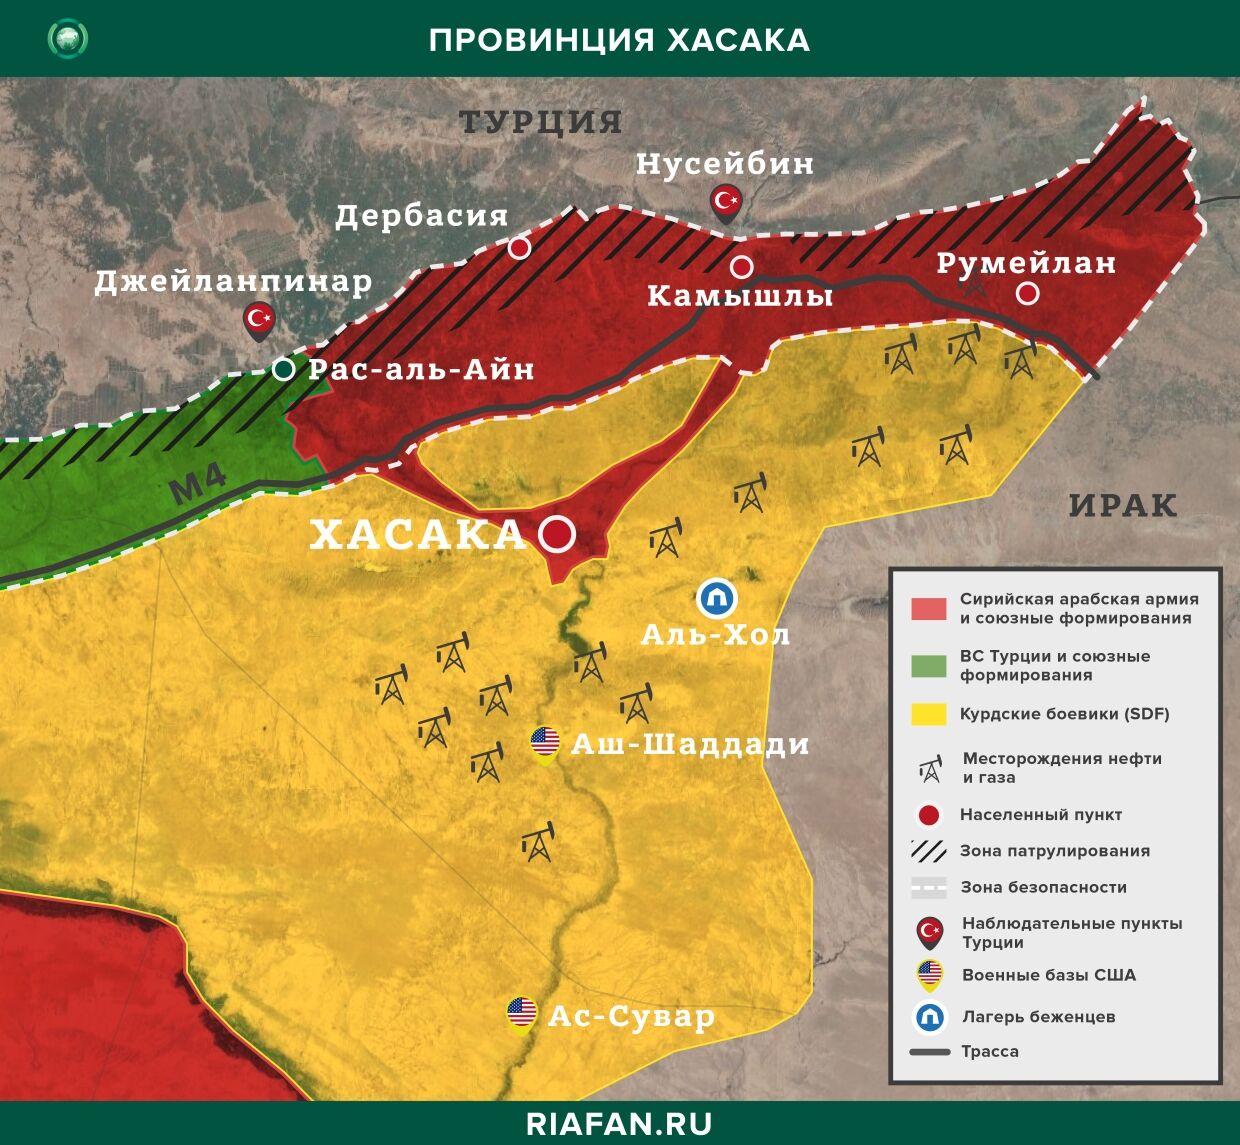 叙利亚新闻 7 七月 22.30: 库尔德武装分子在代尔祖尔杀死部落长老, 袭击拉卡的SAA车队